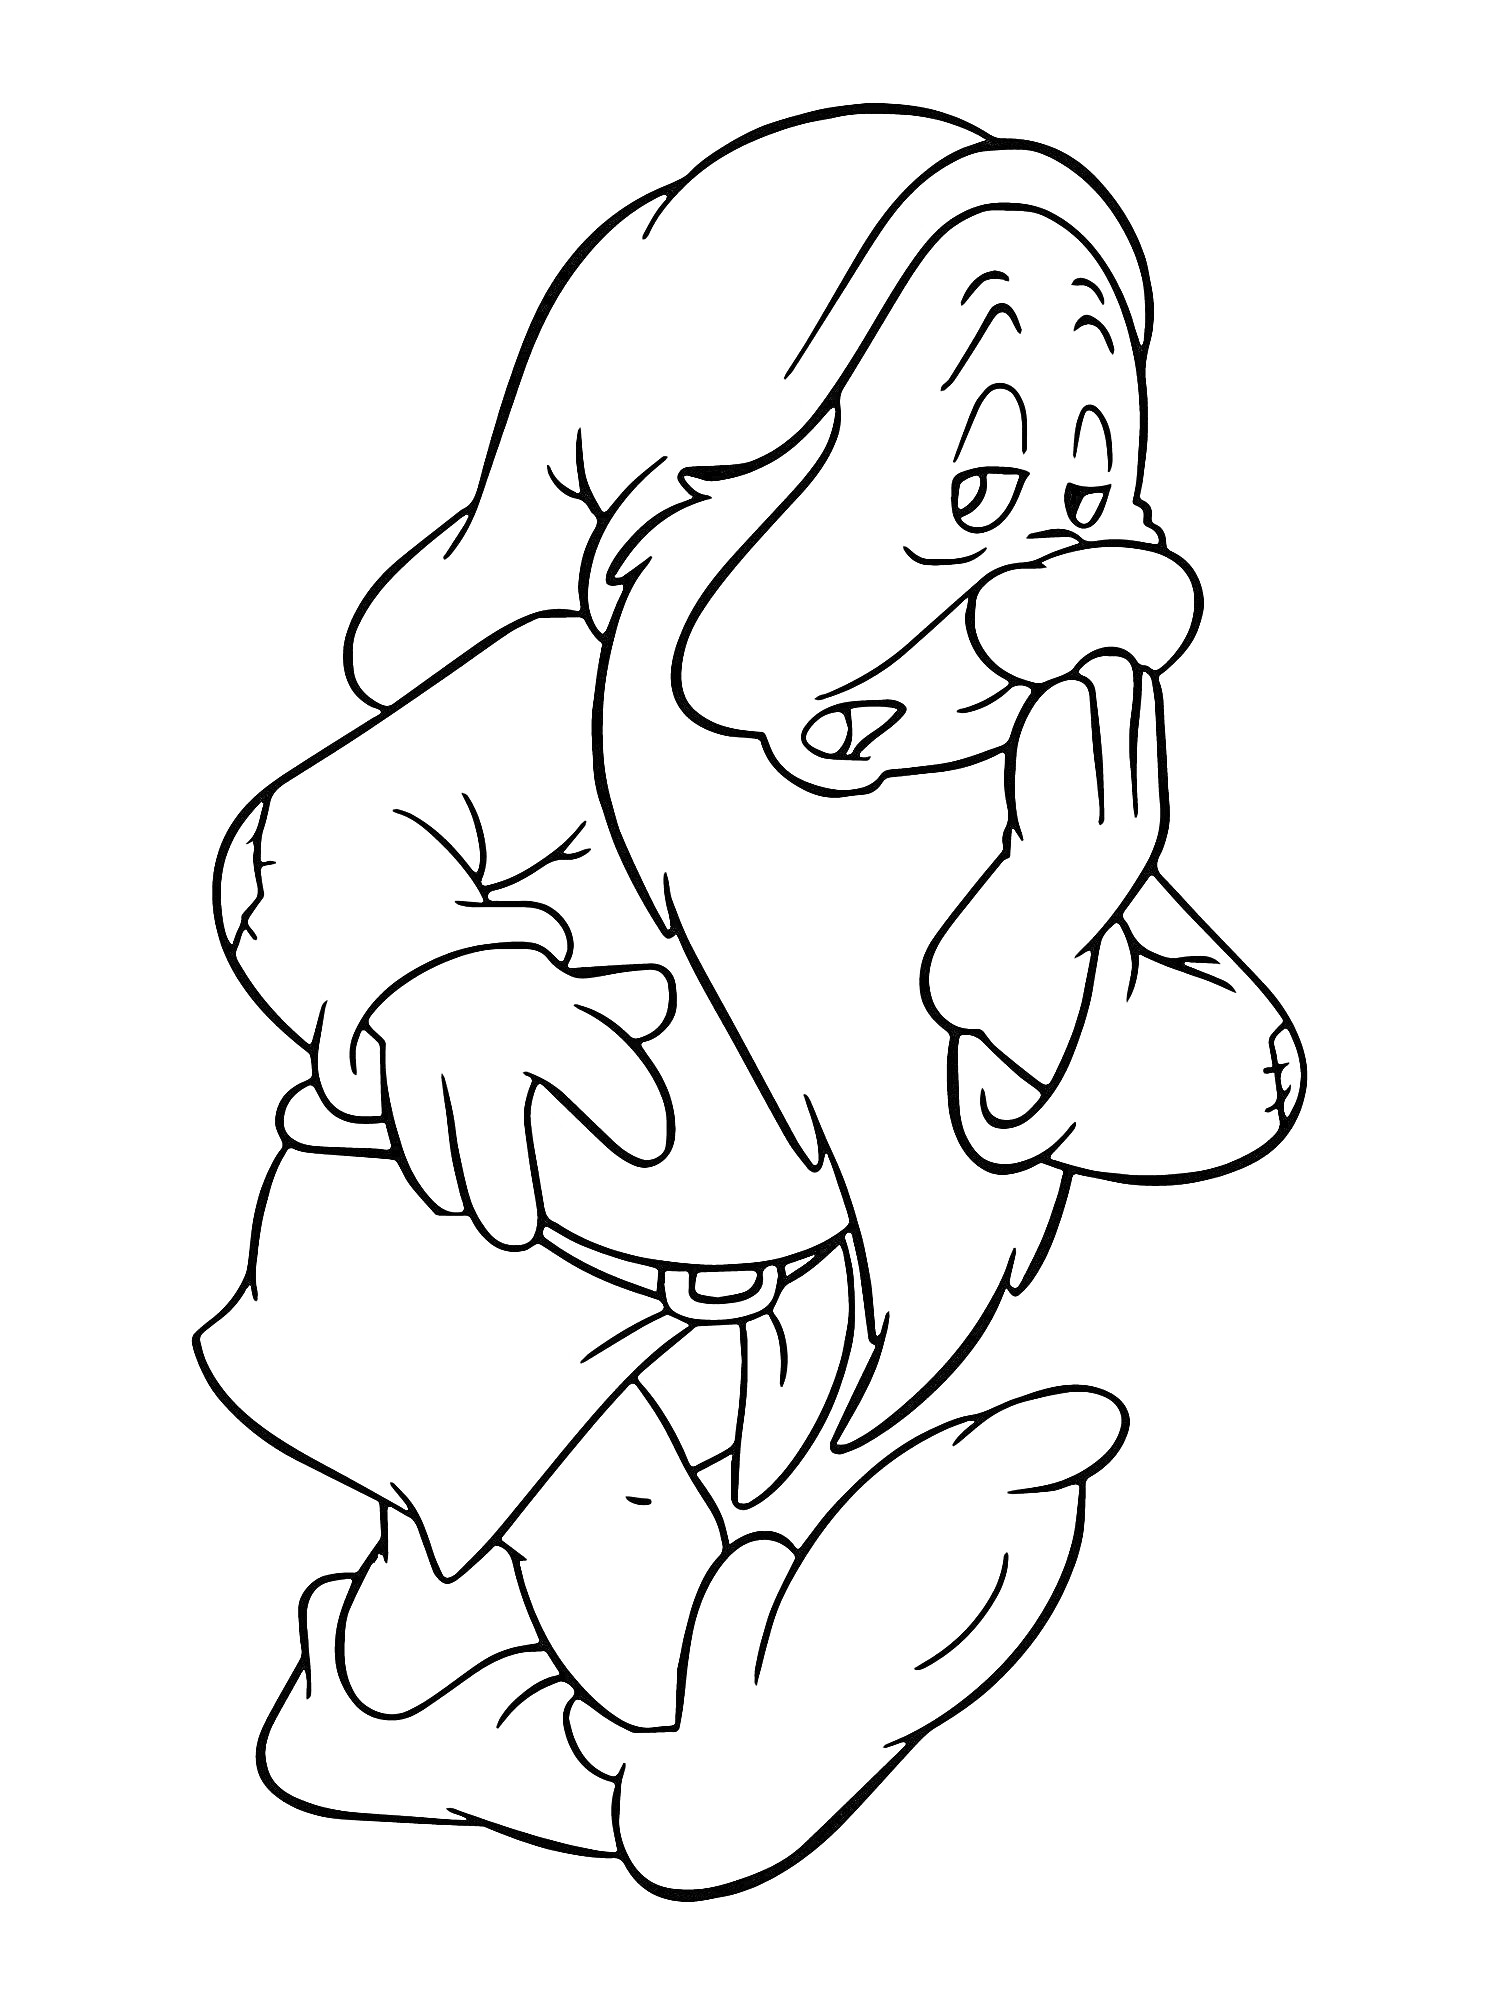 Раскраска Гномик со шляпой, длинной бородой и большими ботинками